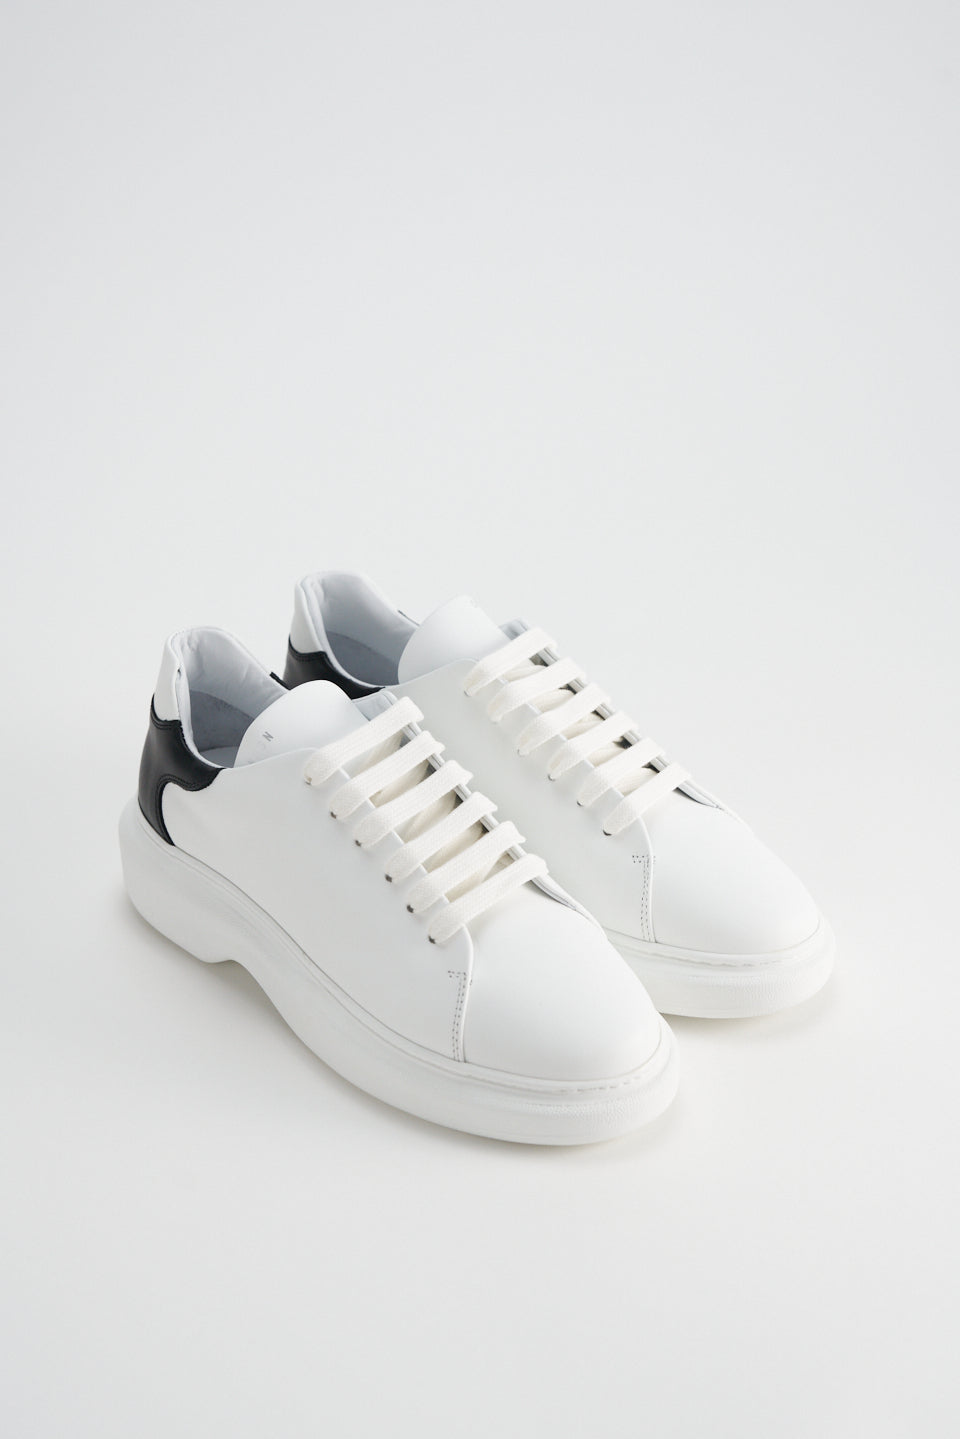 Vitello White Black Chunky Sneakers CPH812 - 5